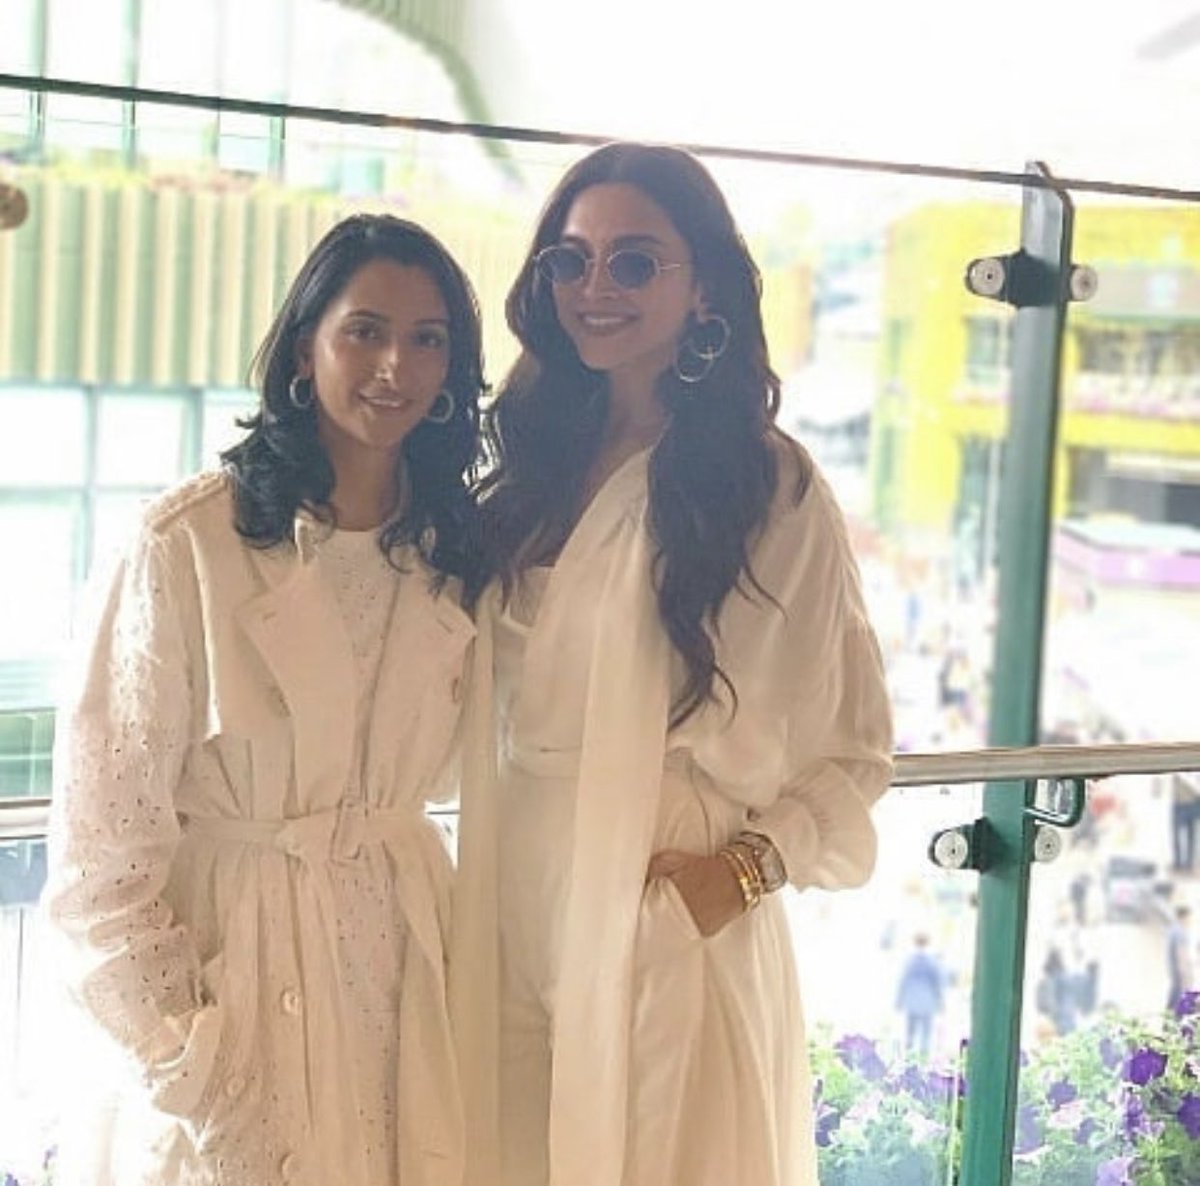 Mumma and aunt in white 🤍 
#DeepikaPadukone #AnishaPadukone